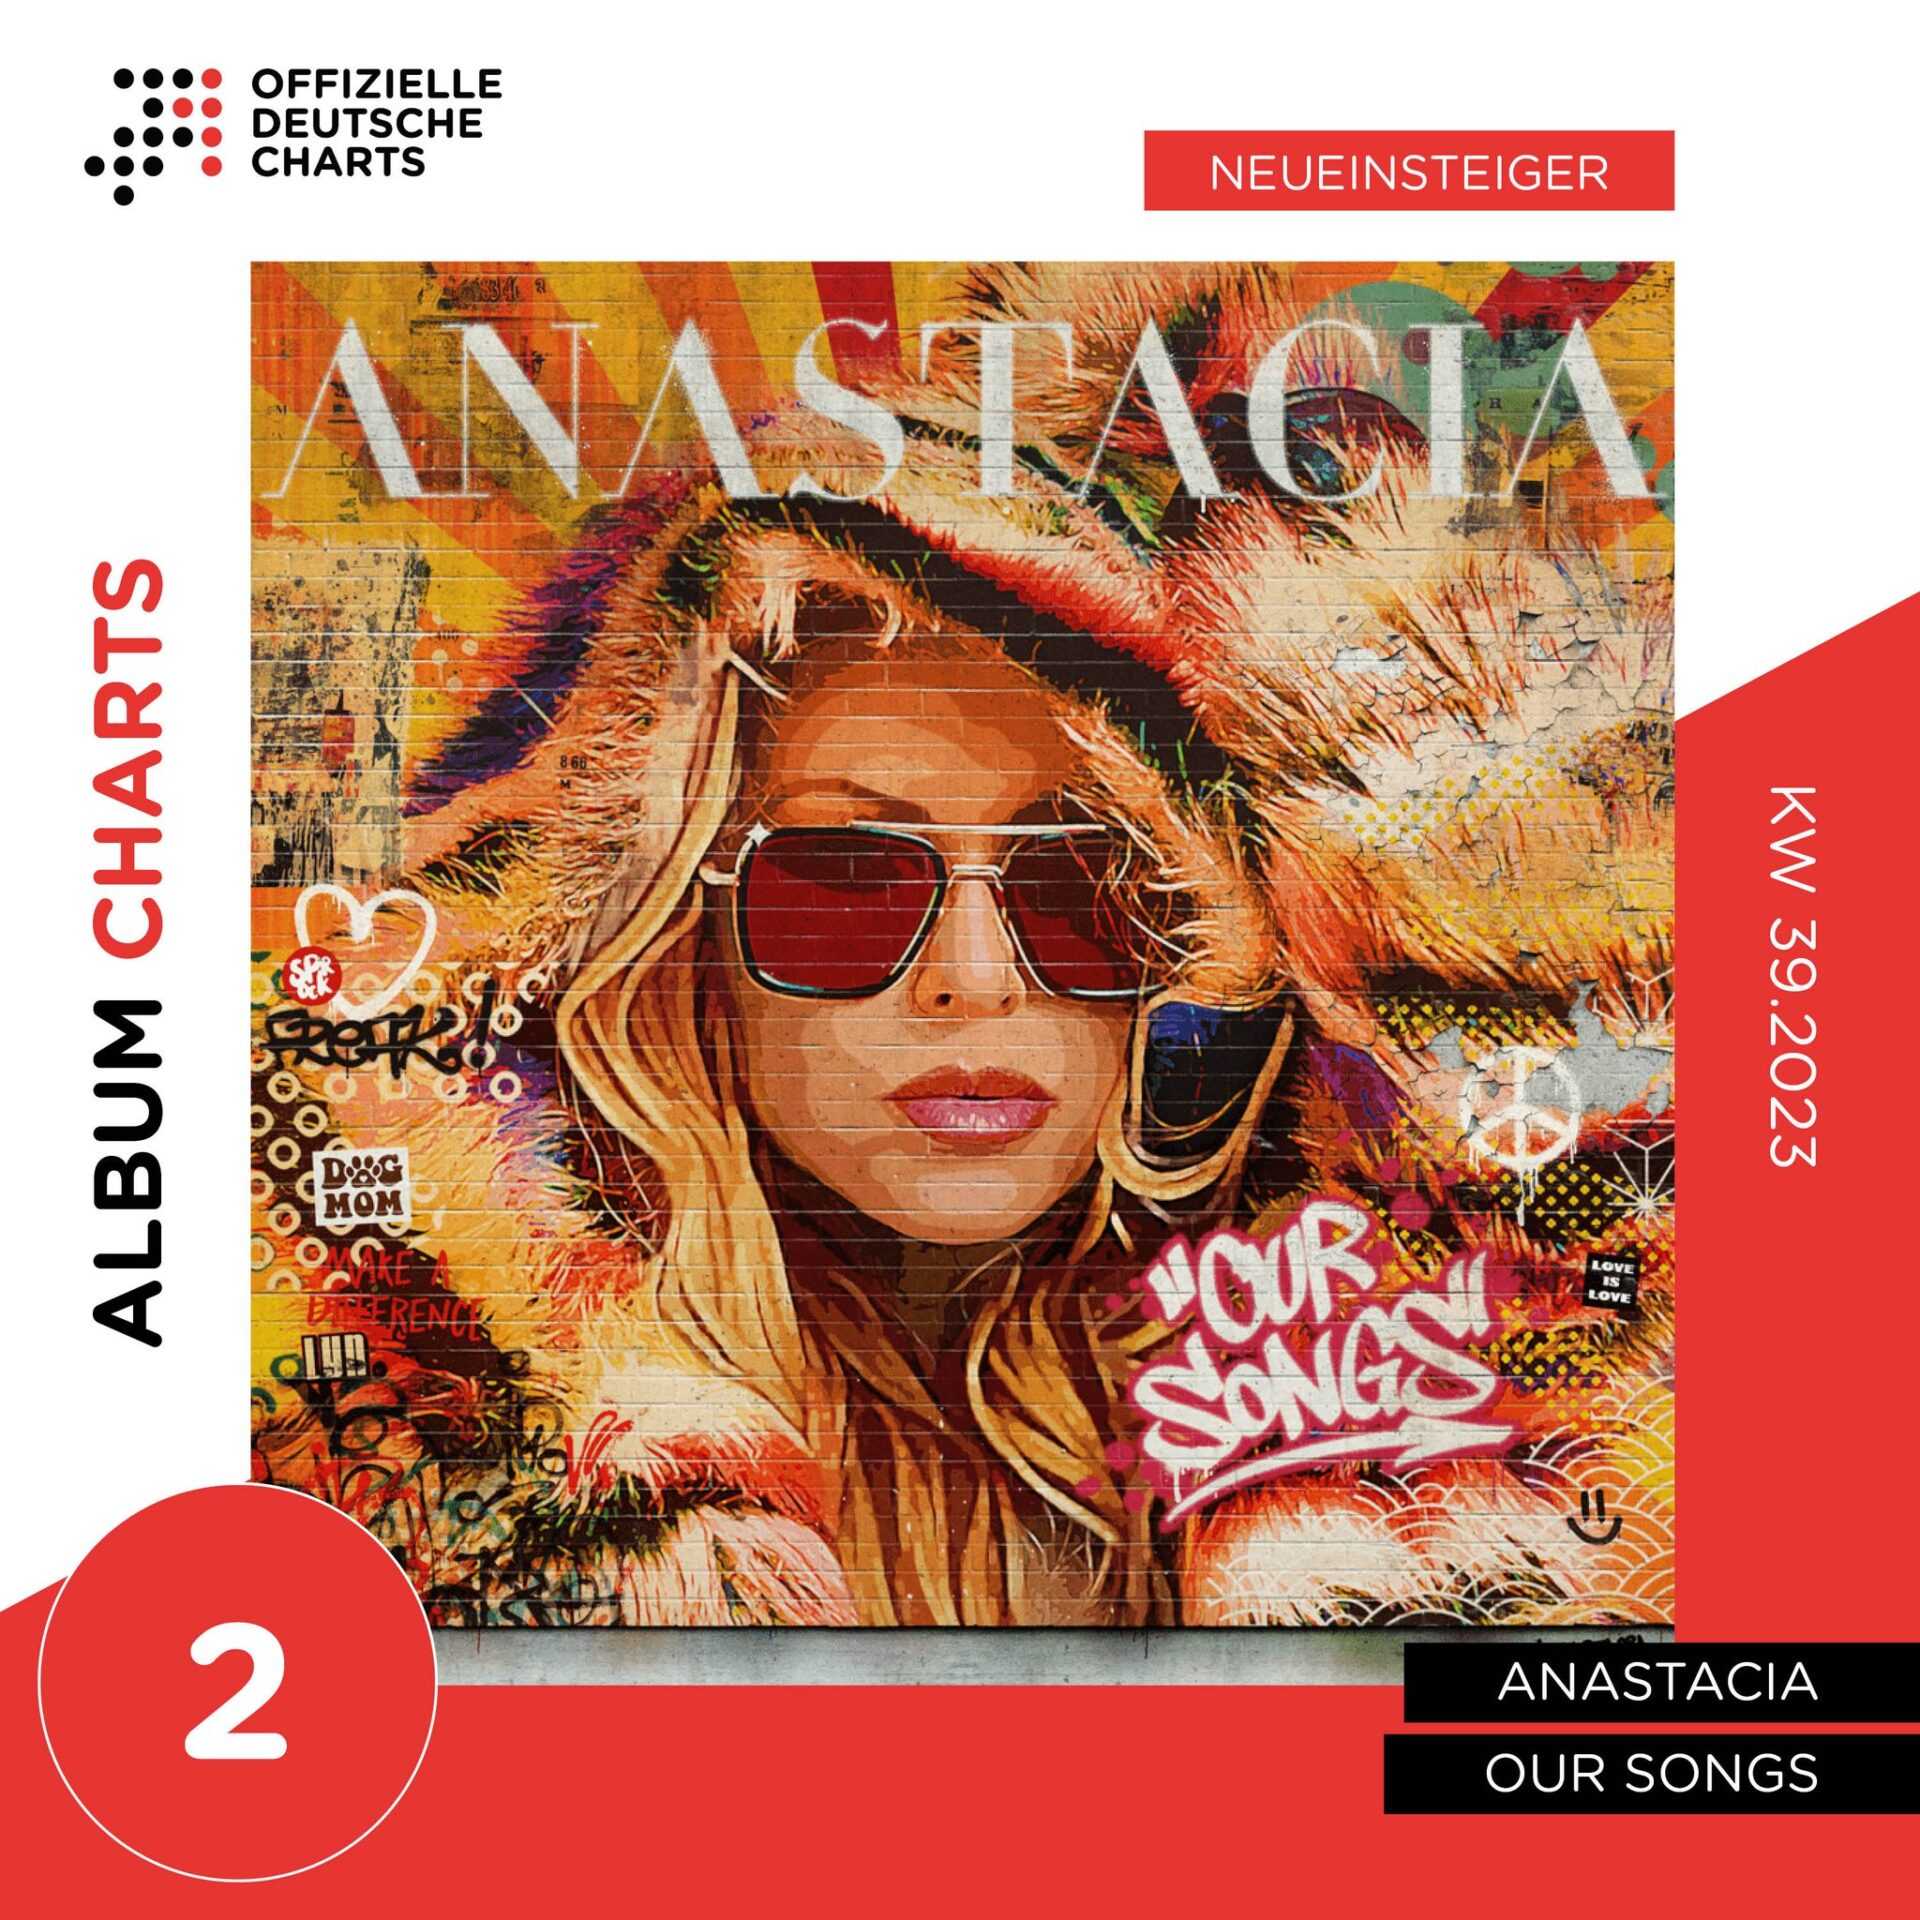 Anastacia veröffentlicht neues Album und steigt auf #2 in den Charts ein